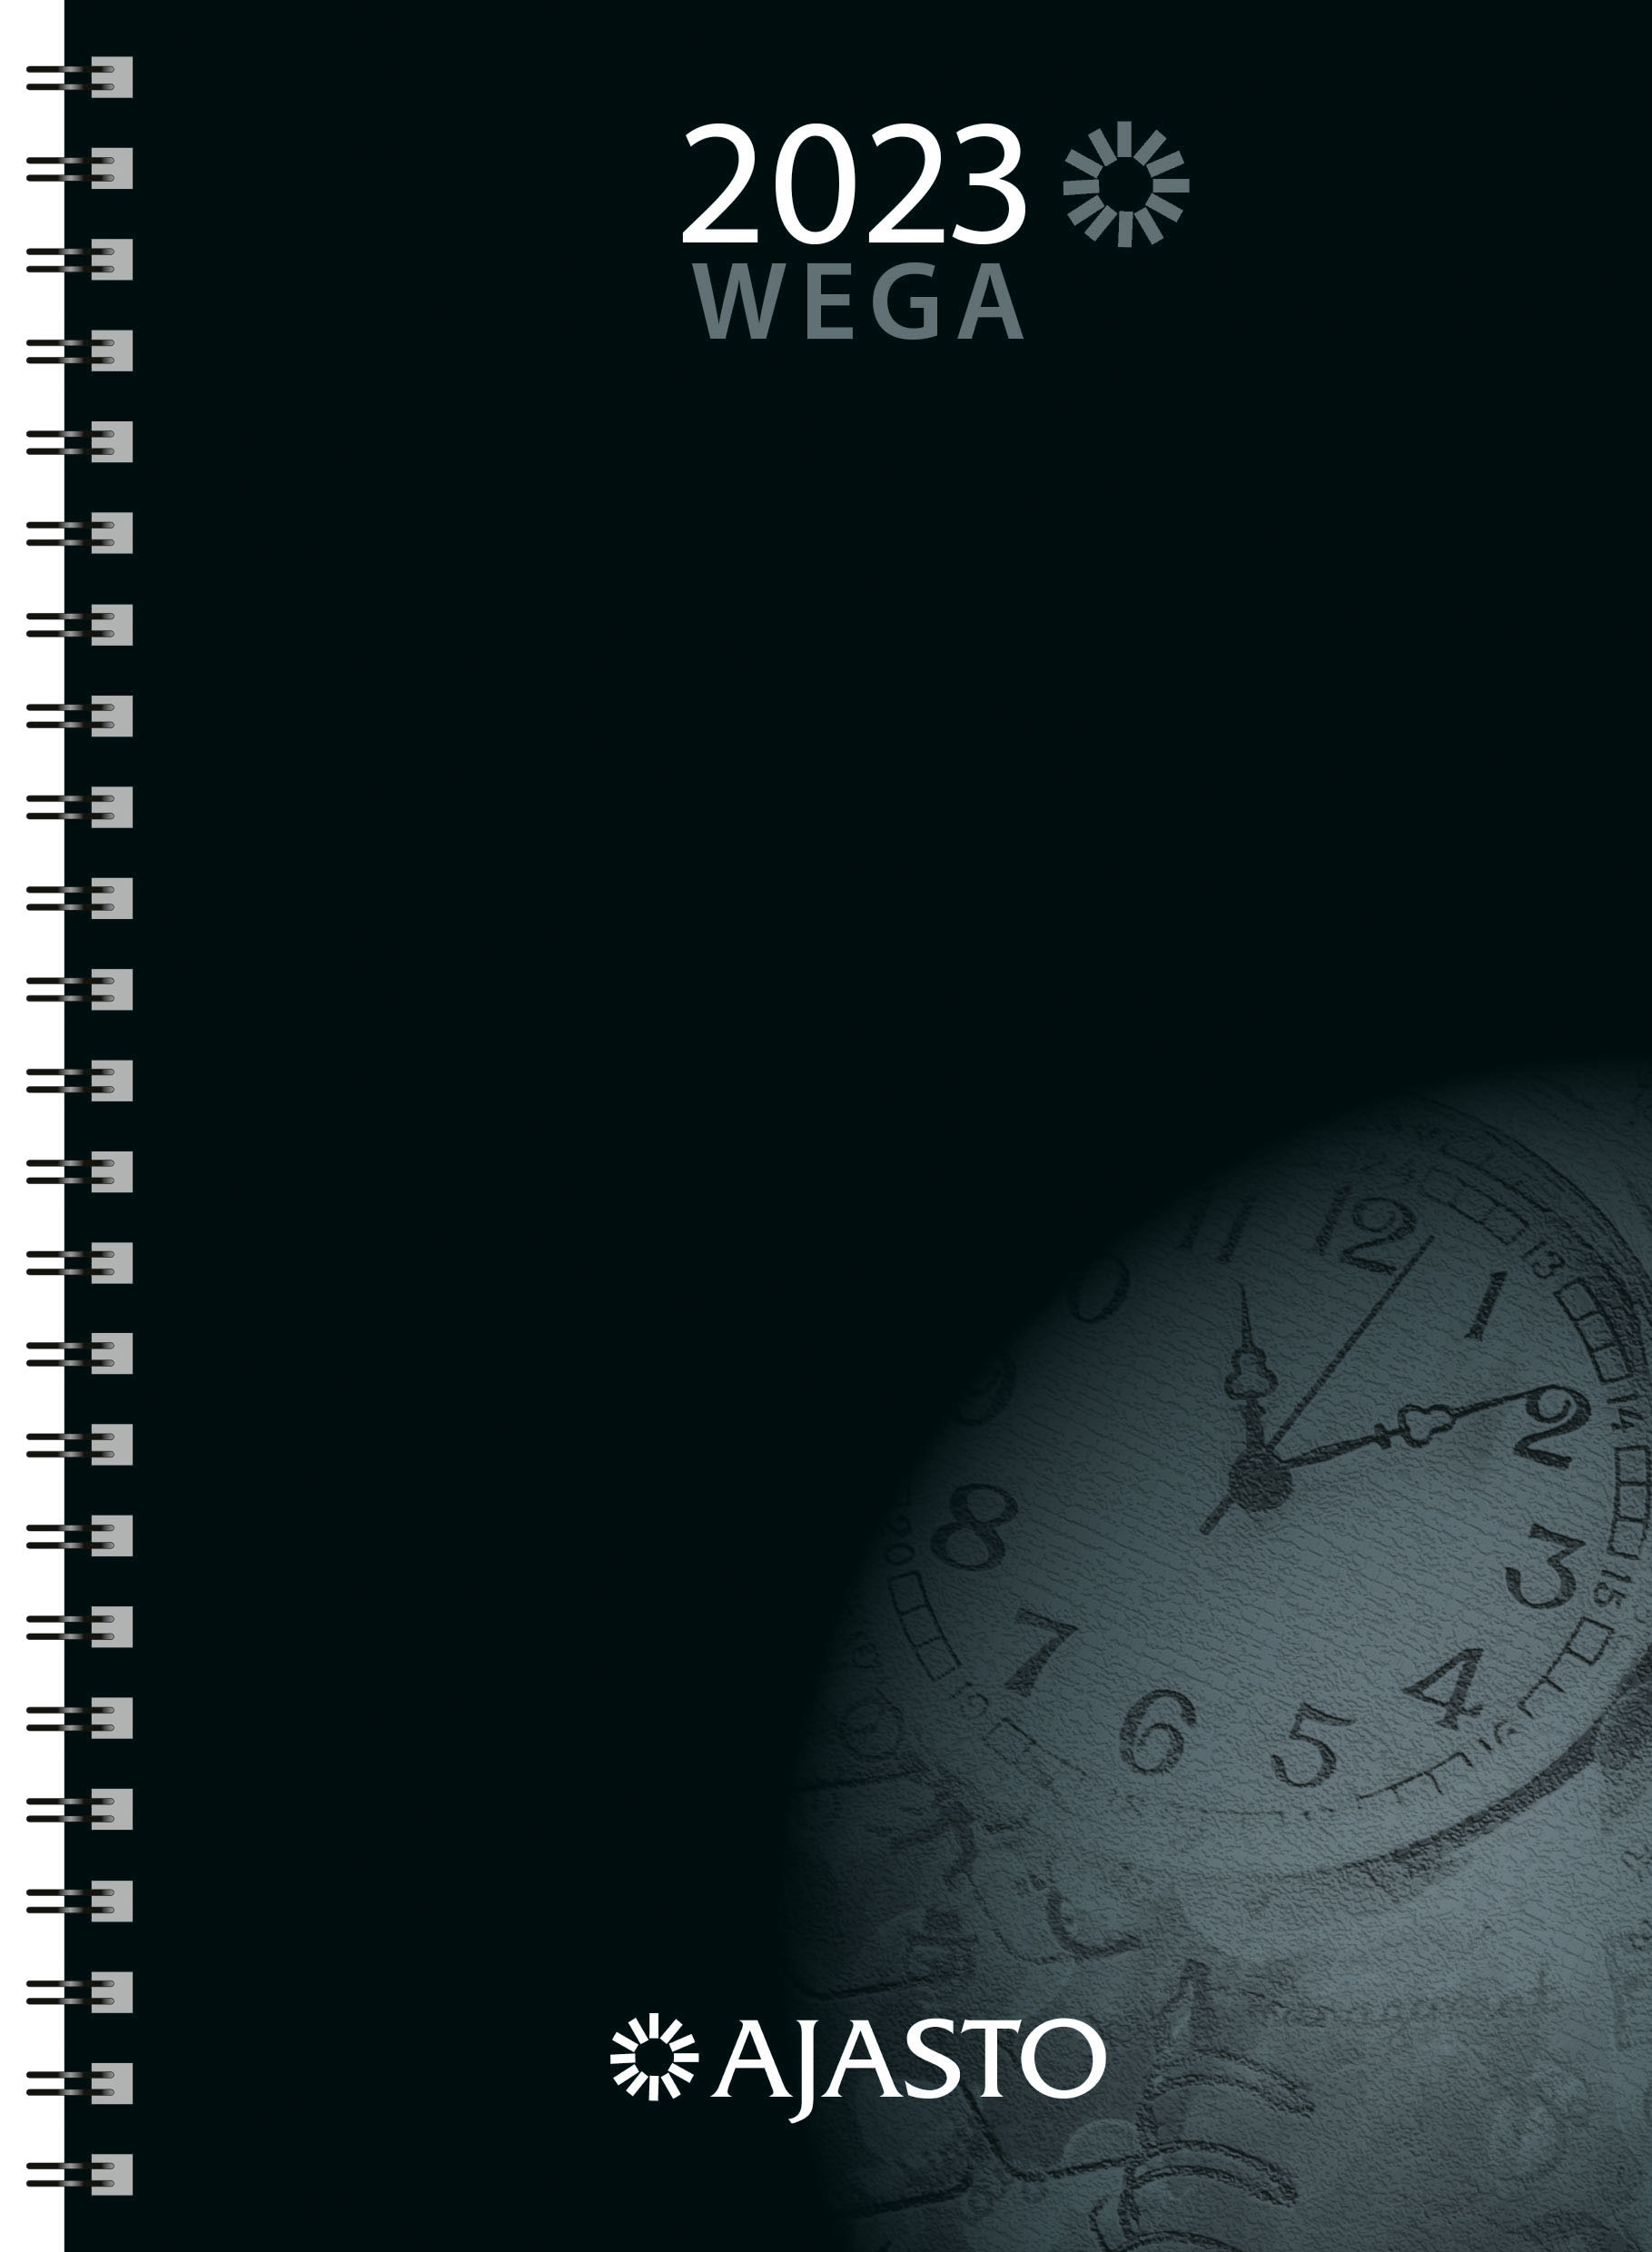 Wega-vuosipaketti 2023